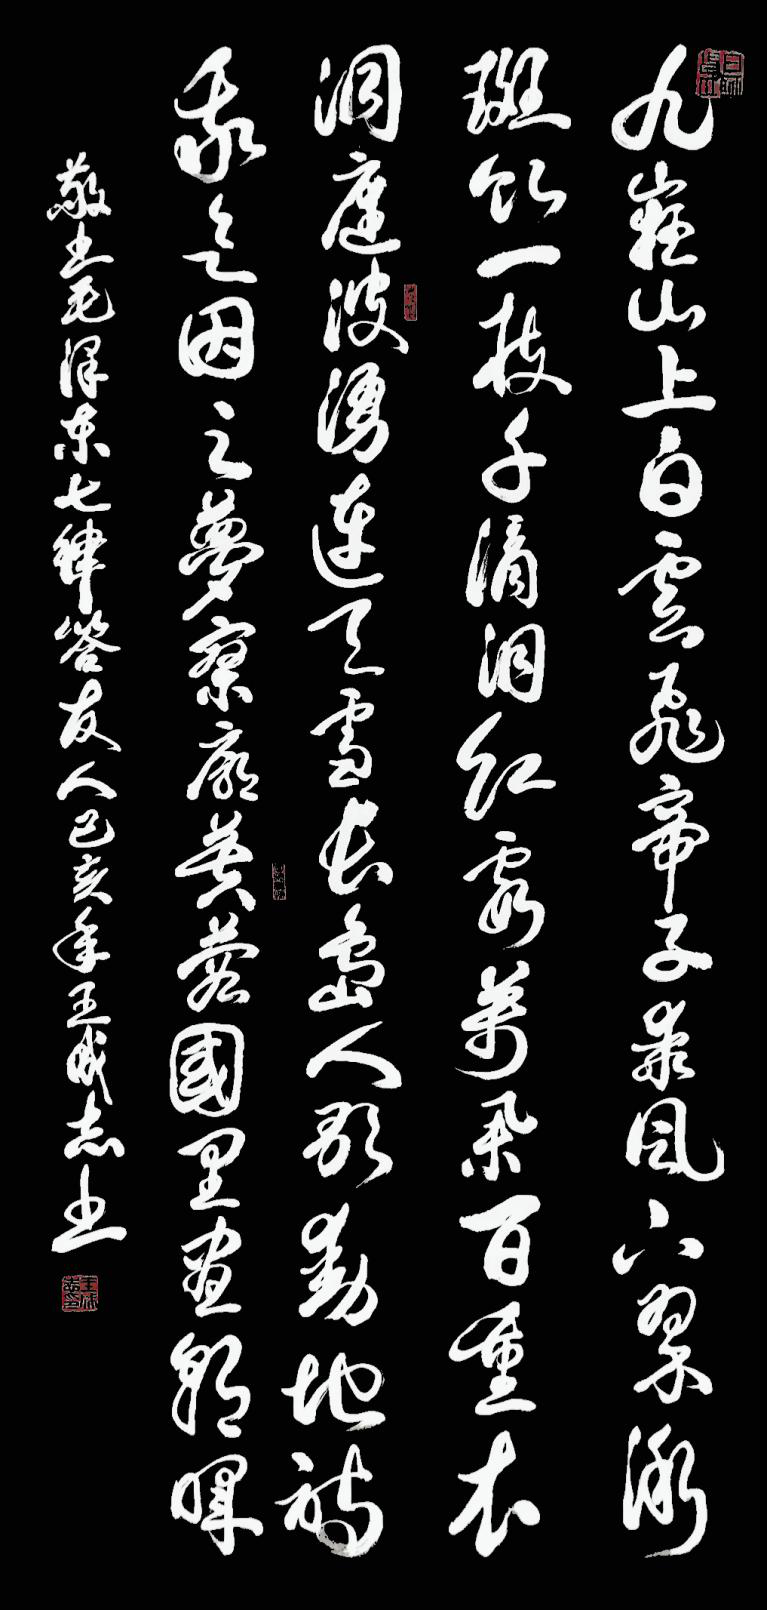 枕戈梦攥笔，挥洒留墨香 --王成志将军书法印象